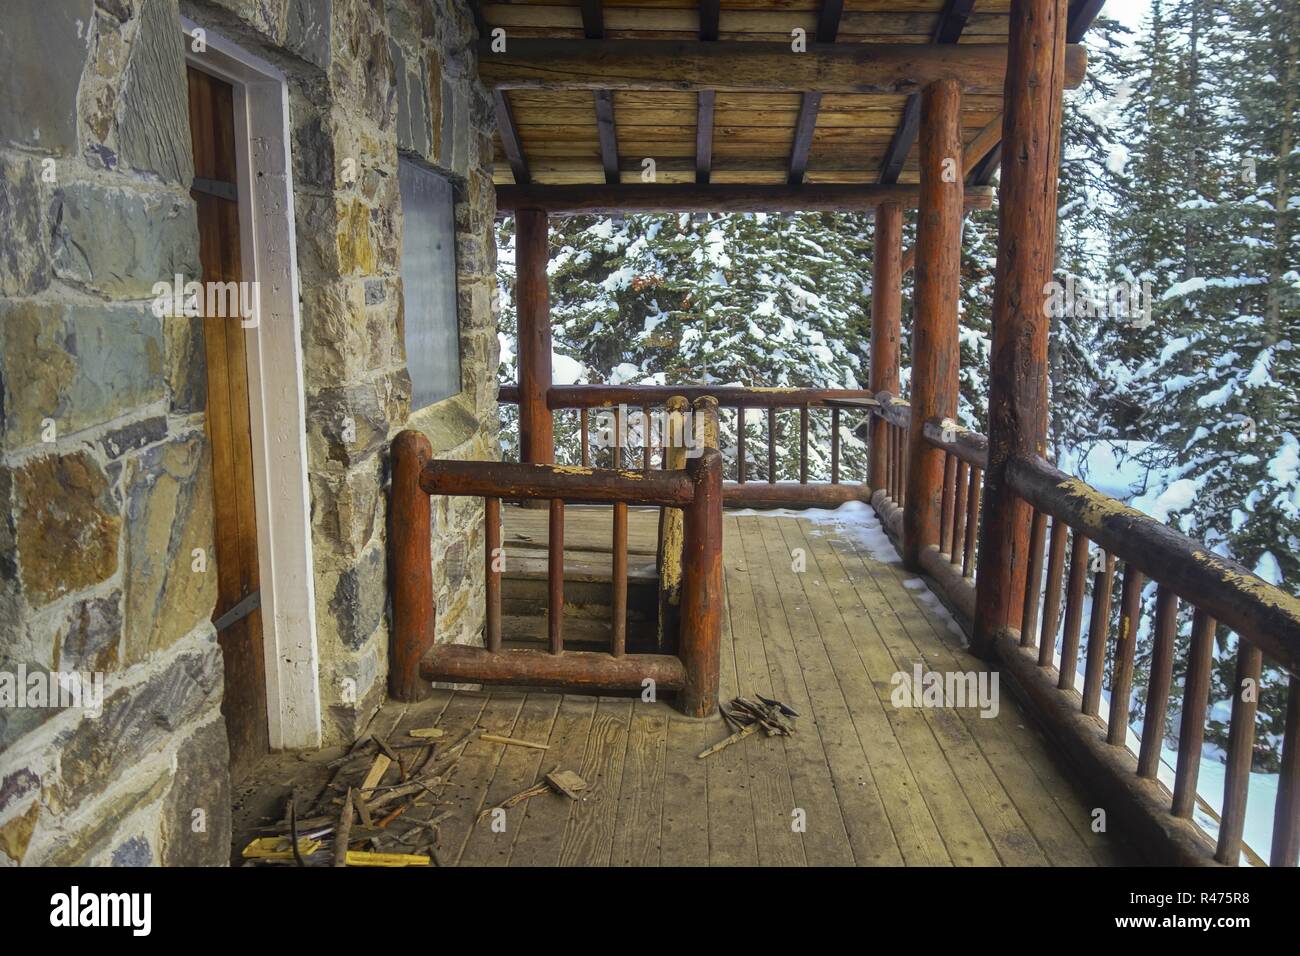 Maison de thé rustique vintage Log Cabin en bois porche extérieur. Sentier de randonnée de la plaine des six Glaciers. Parc national Banff montagnes Rocheuses canadiennes hiver Banque D'Images